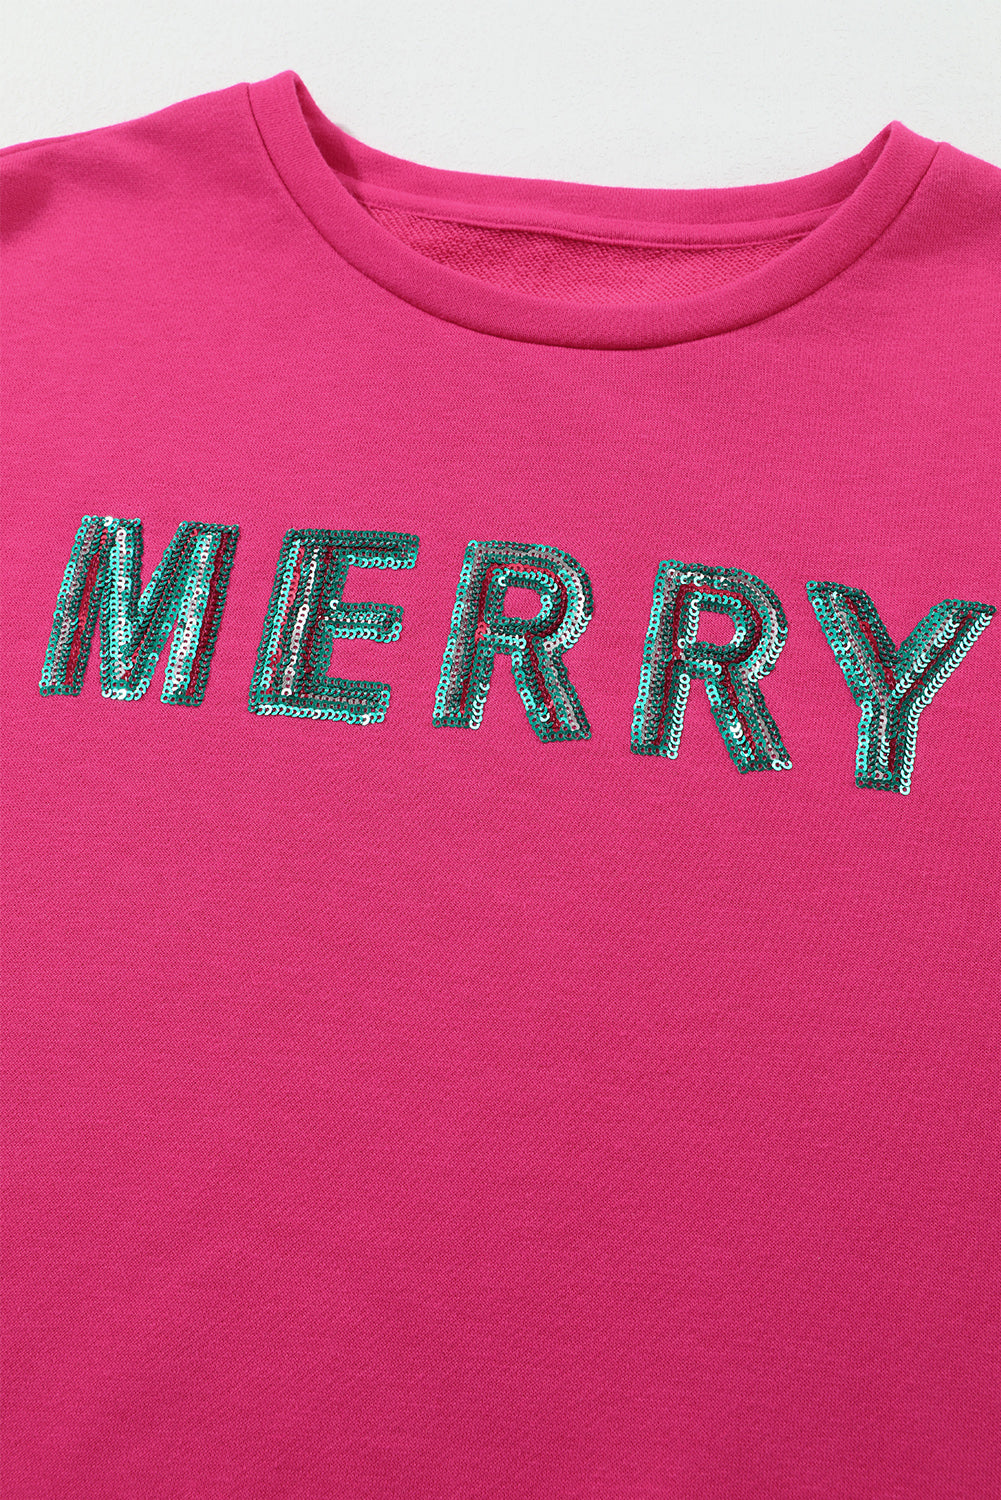 Jagodno roza pulover z bleščicami MERRY Christmas Tree